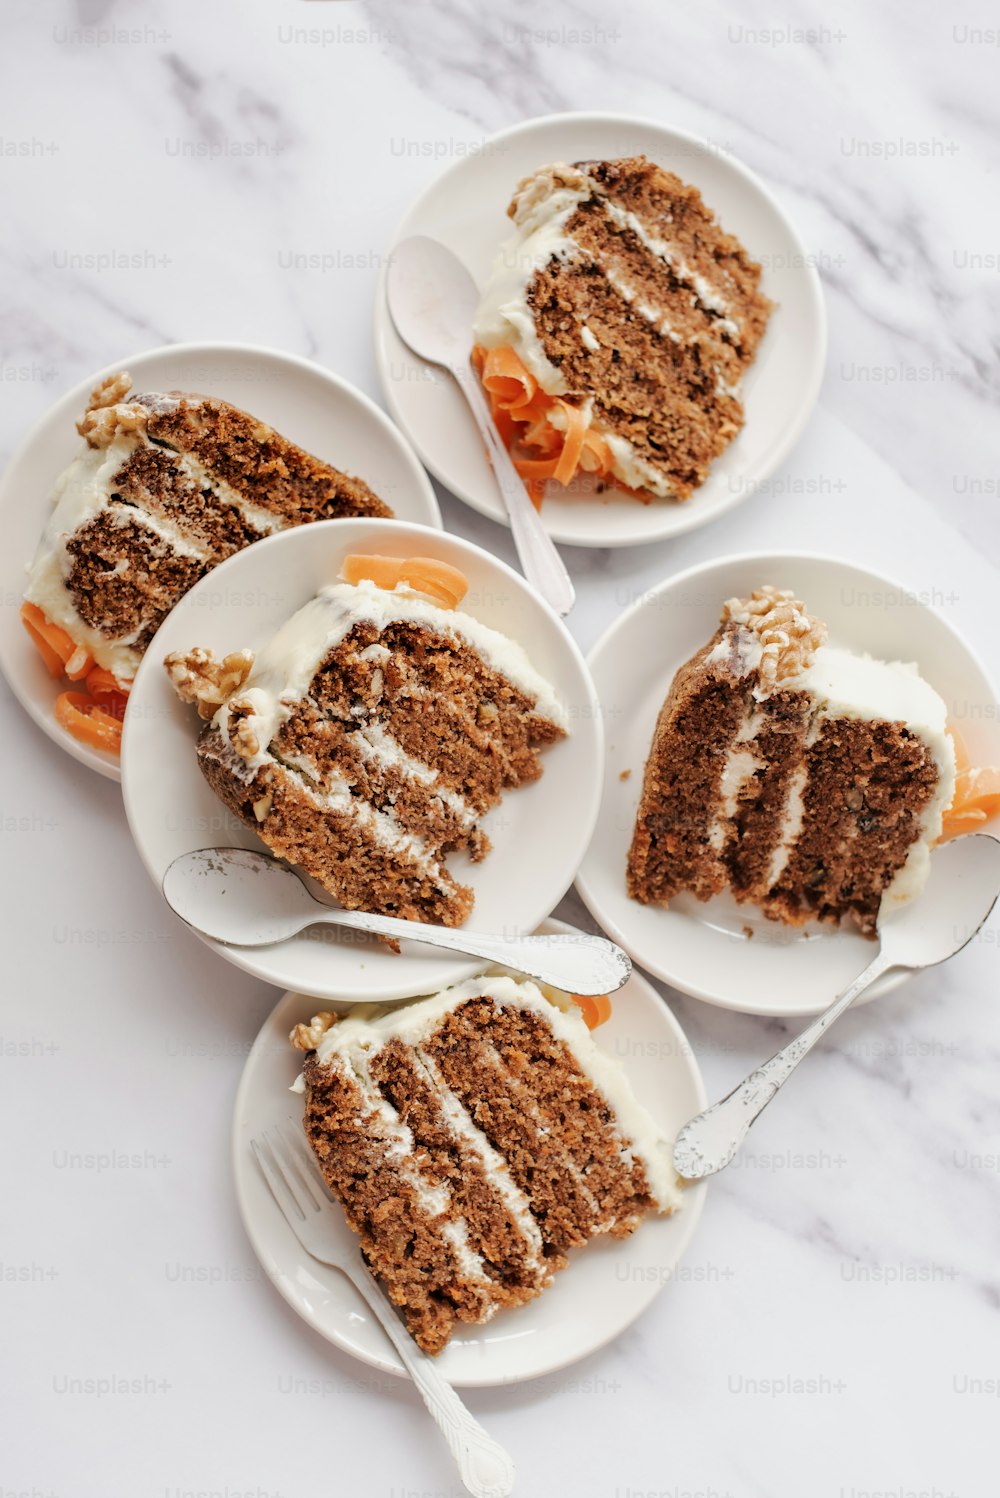 quatre assiettes avec des tranches de gâteau aux carottes dessus